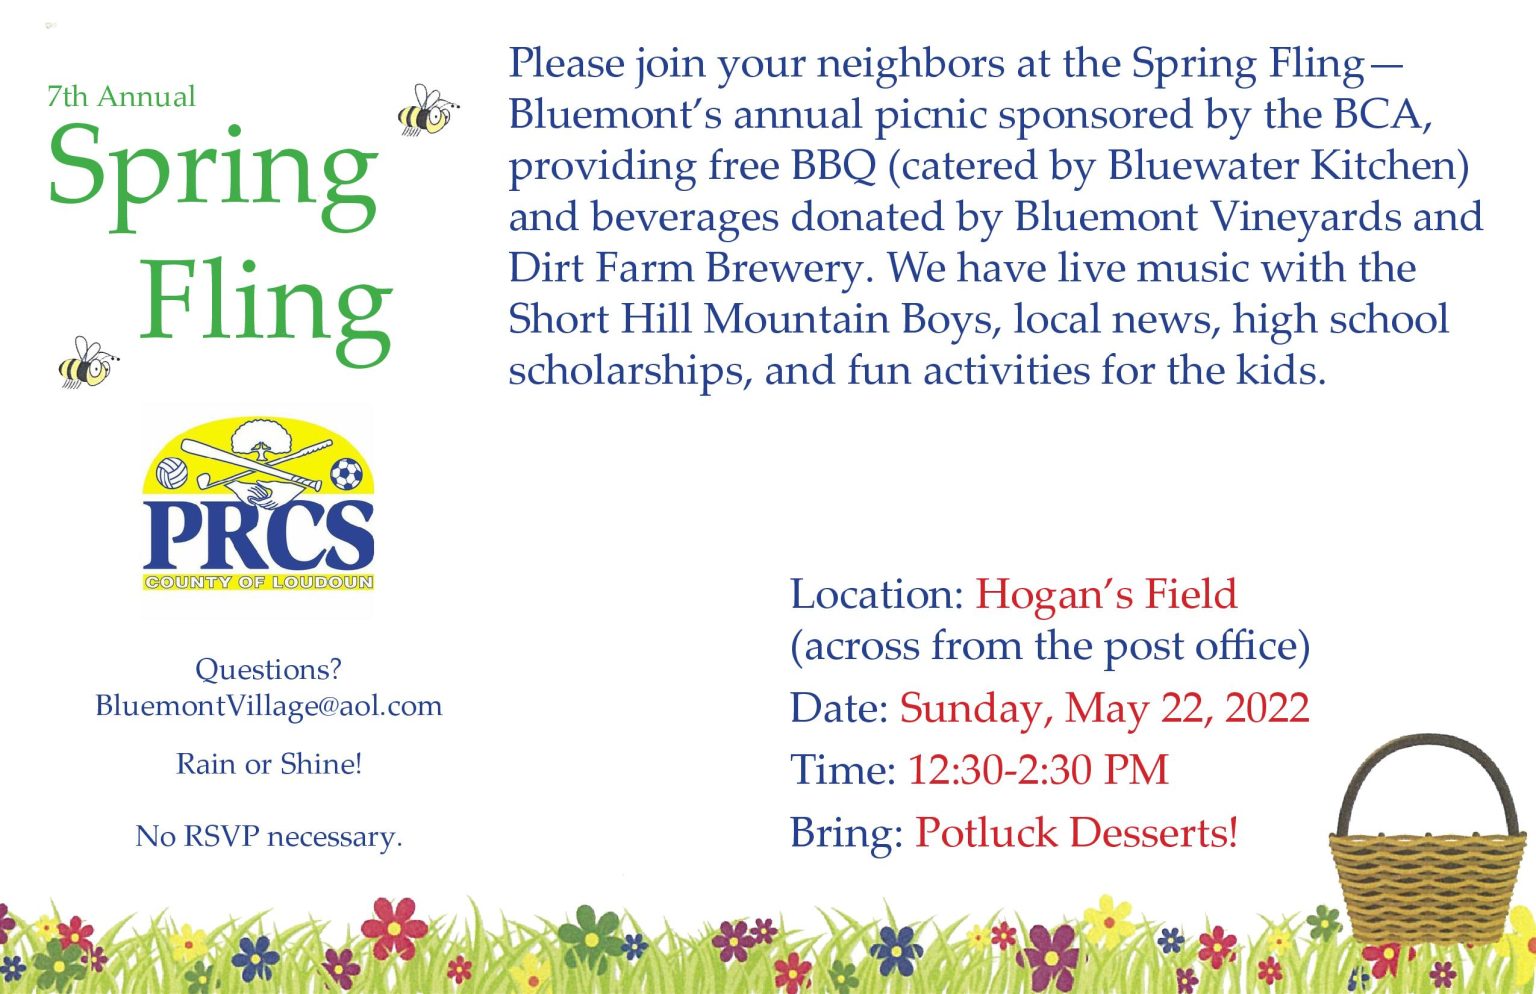 BCA Spring Fling Village of Bluemont, Virginia